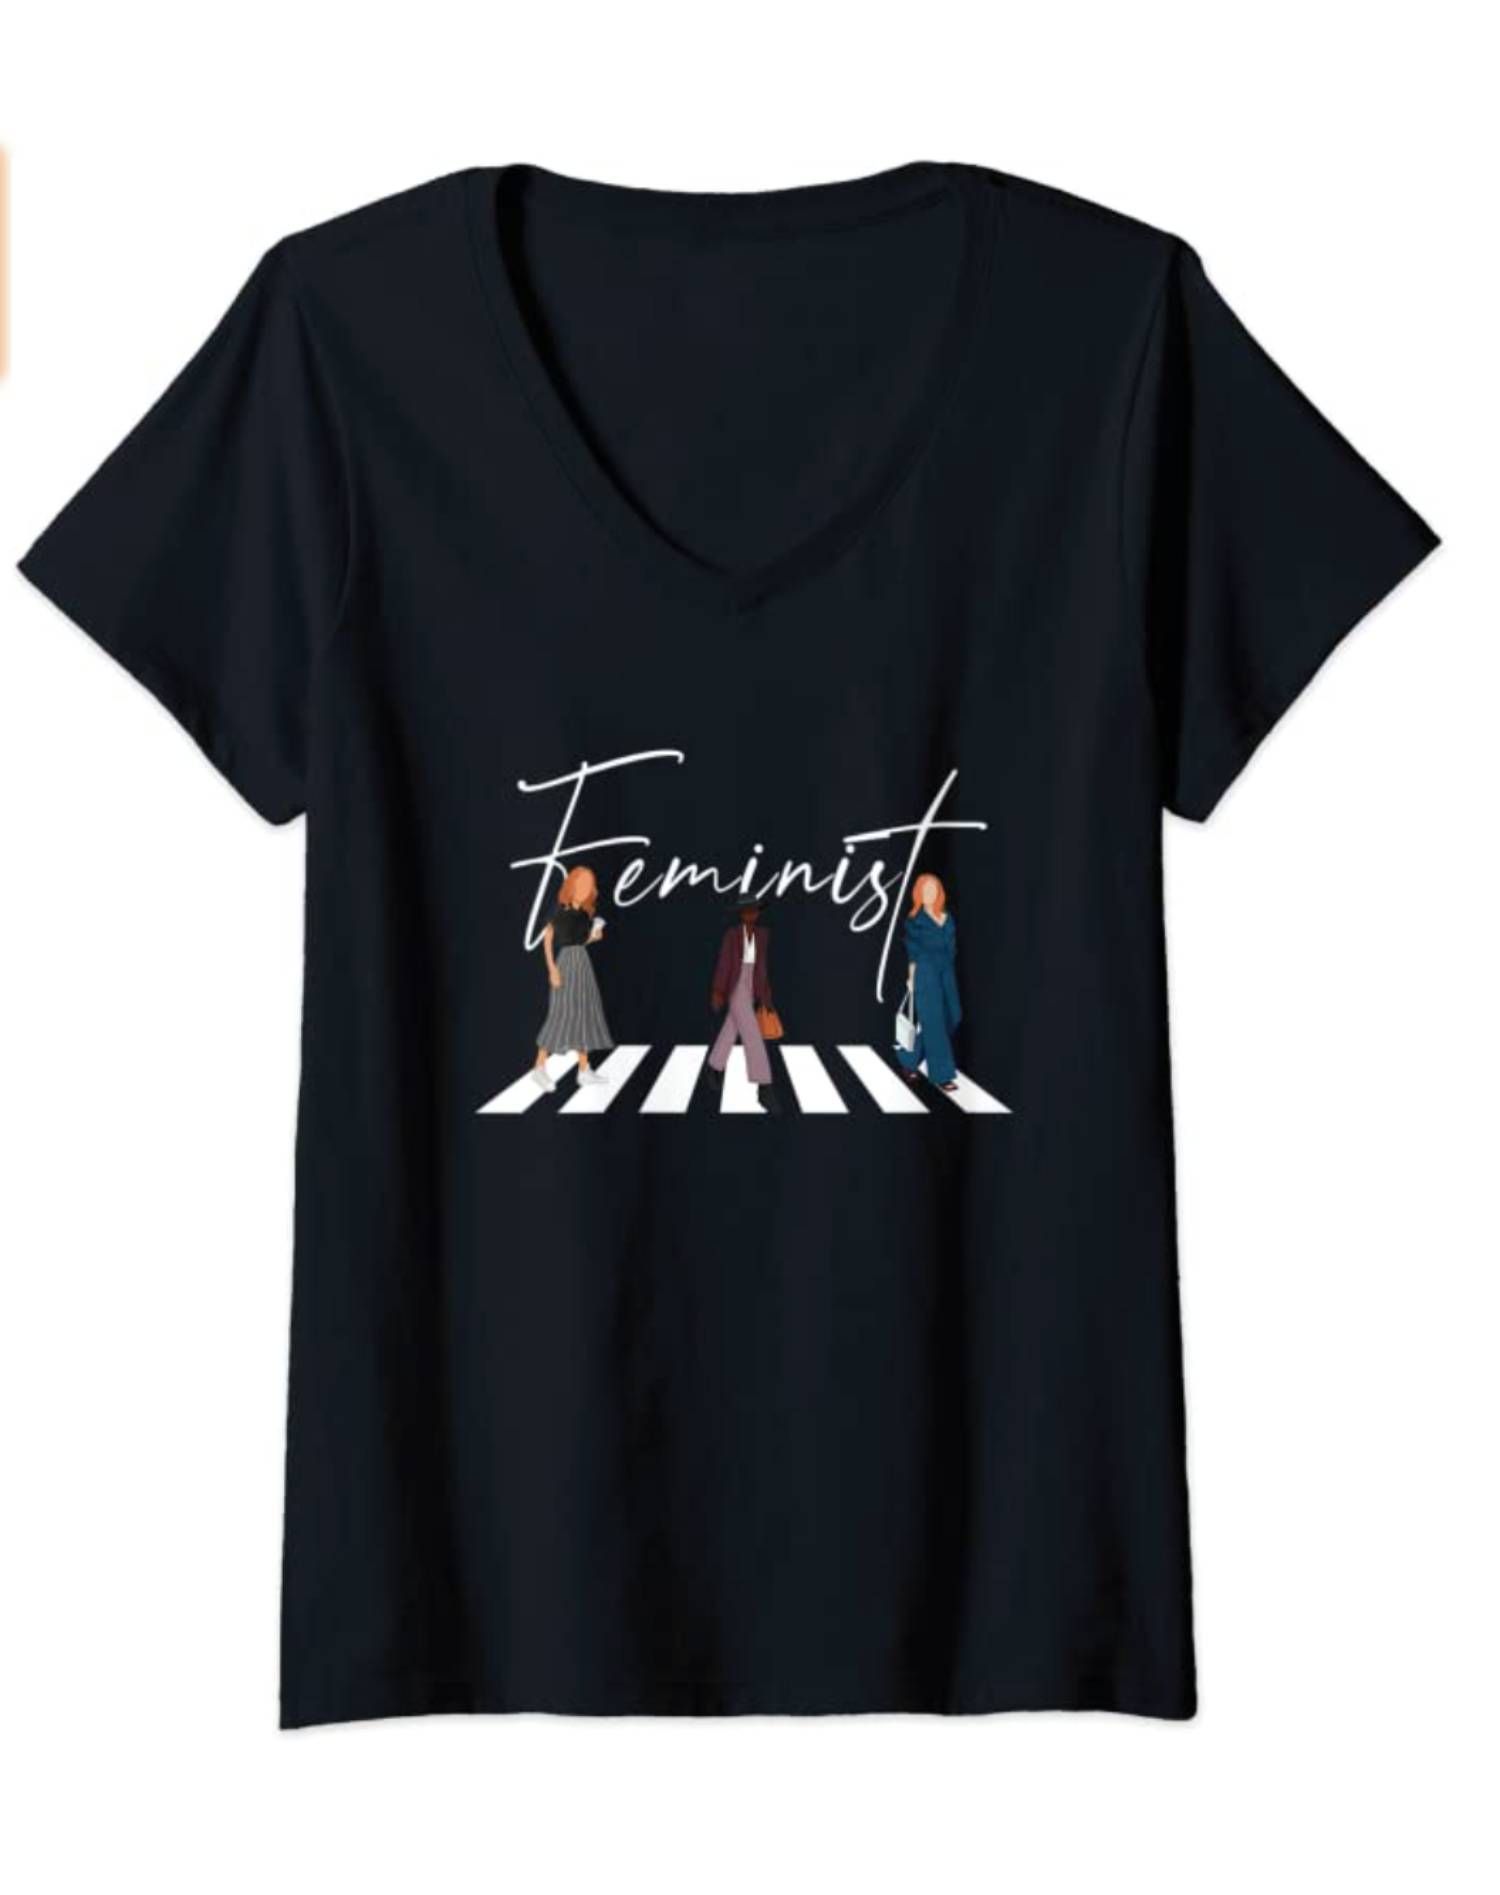 Incorrecto Moderador Derivar 30 camisetas feministas para el Día Internacional de la Mujer